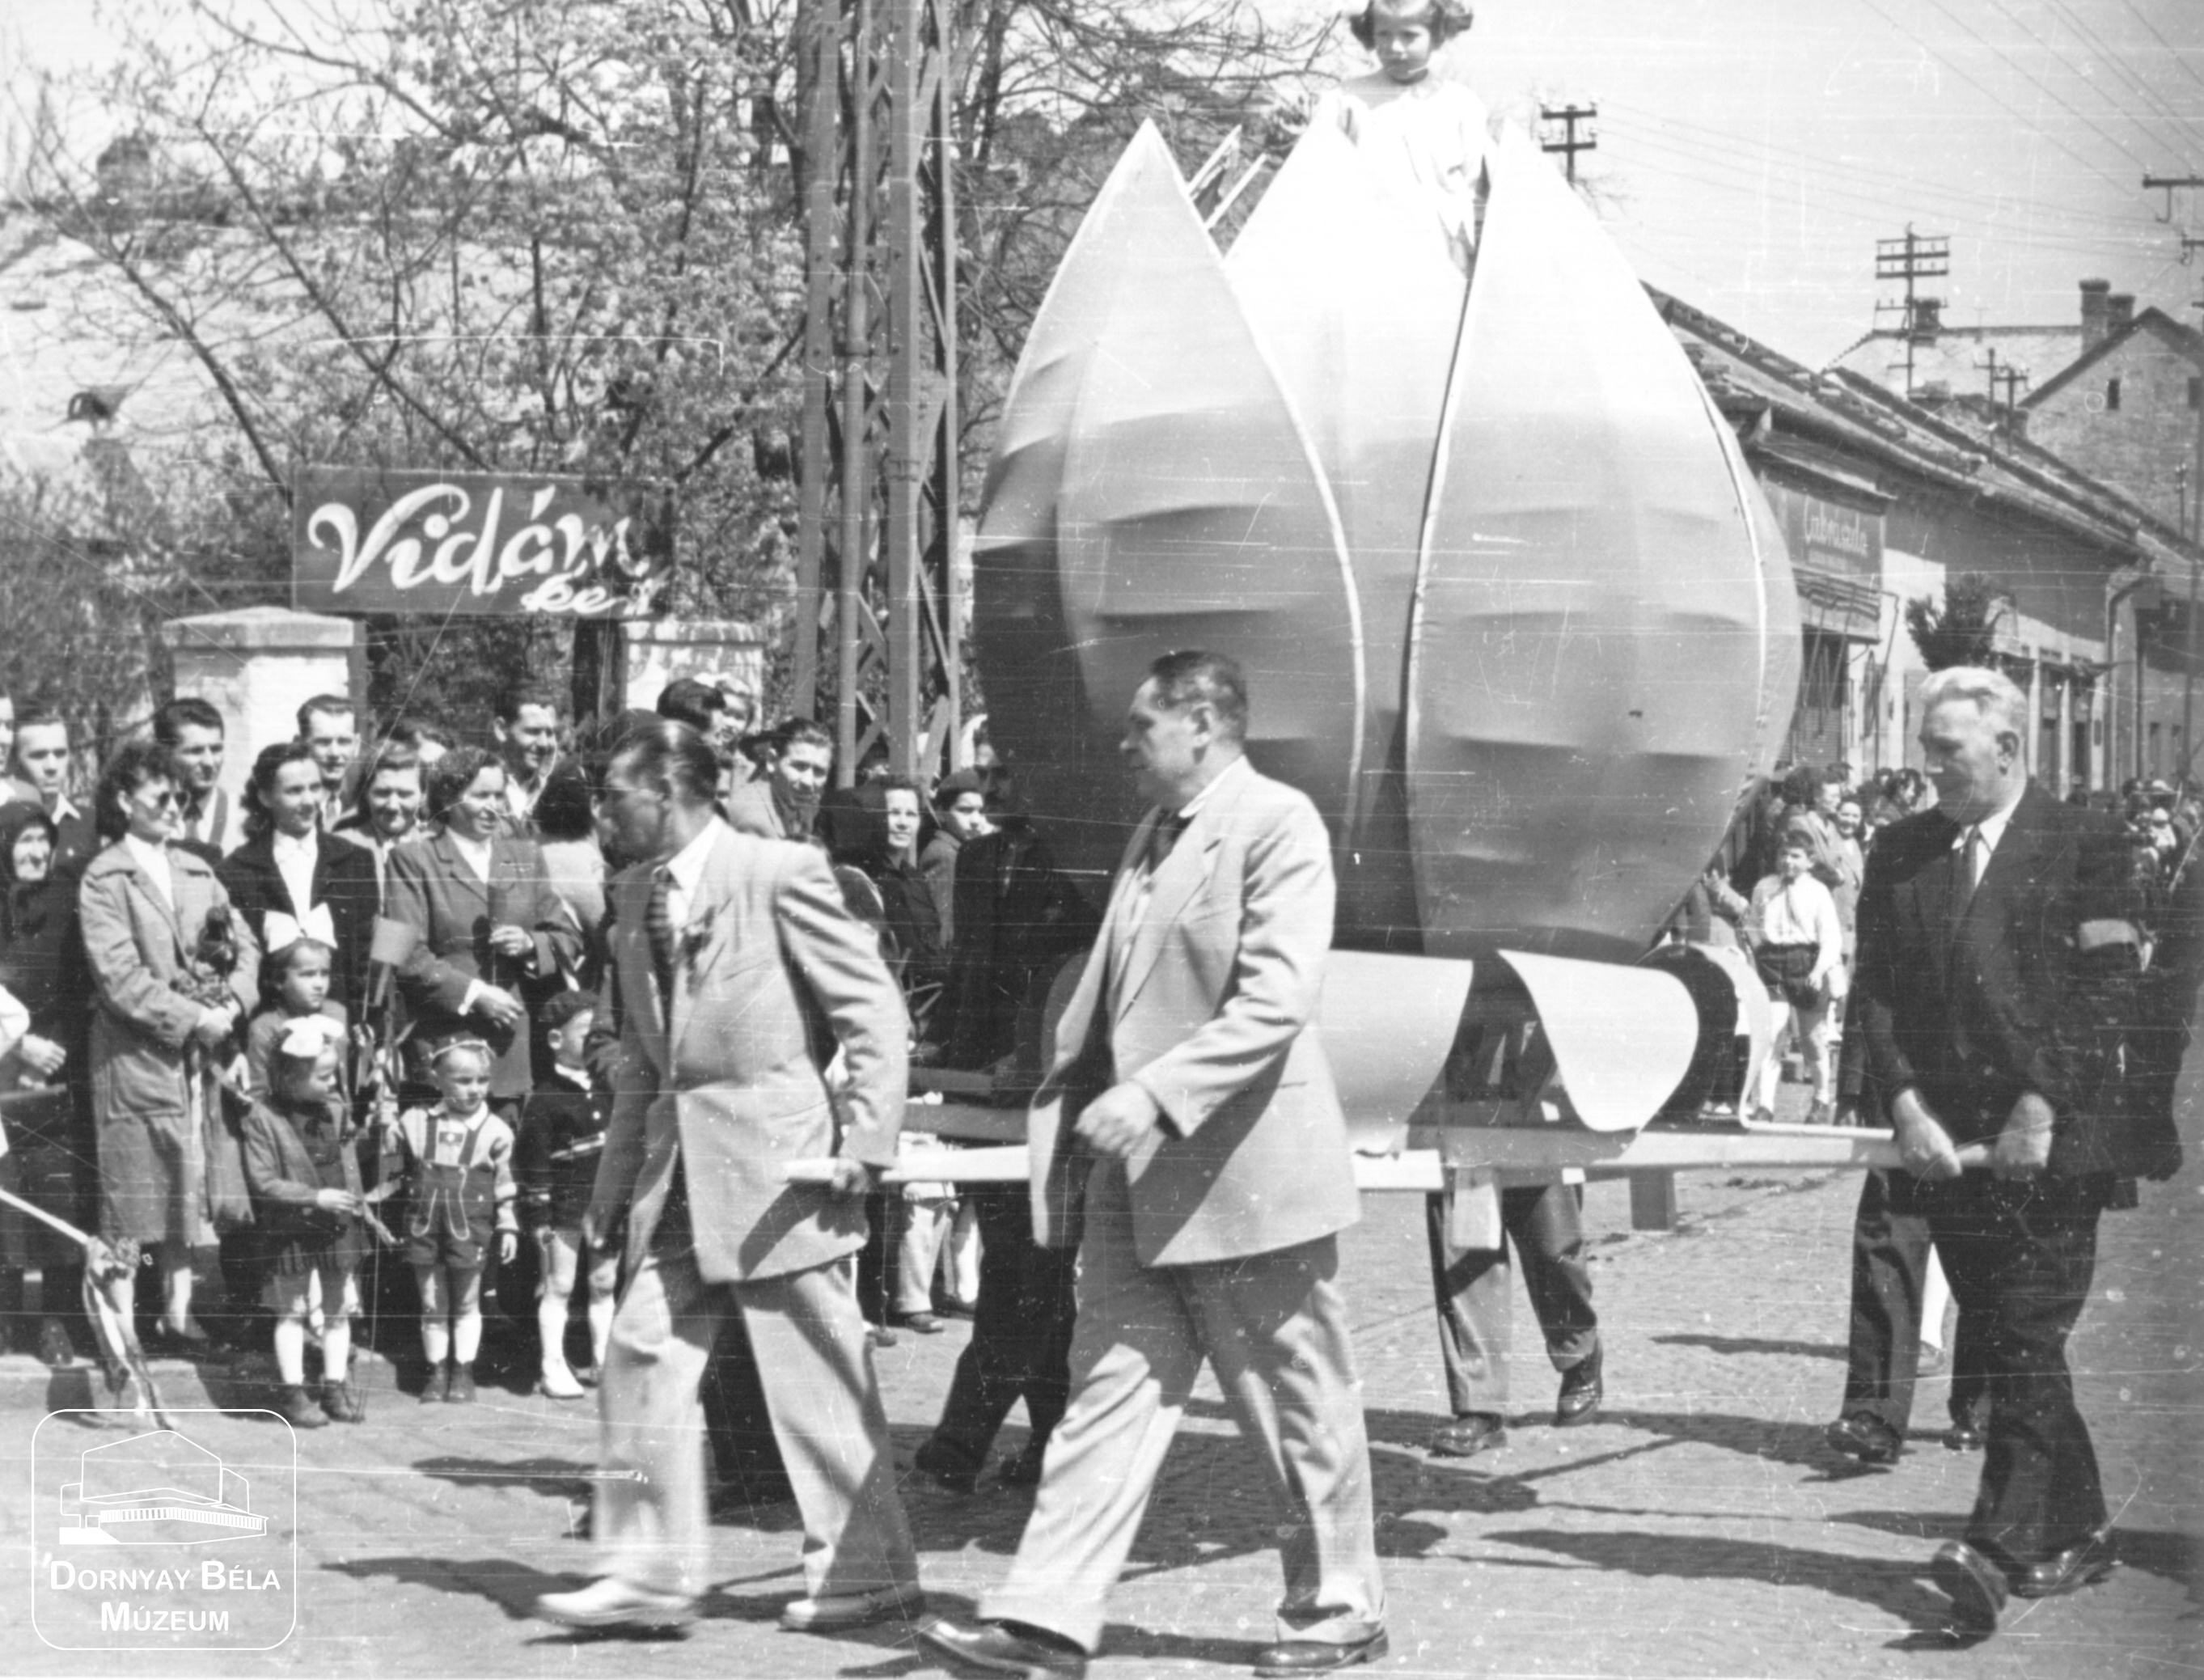 Acélgyár dolgozóinak felvonulása. Huzalozók 1956. május 1-én. (Dornyay Béla Múzeum, Salgótarján CC BY-NC-SA)